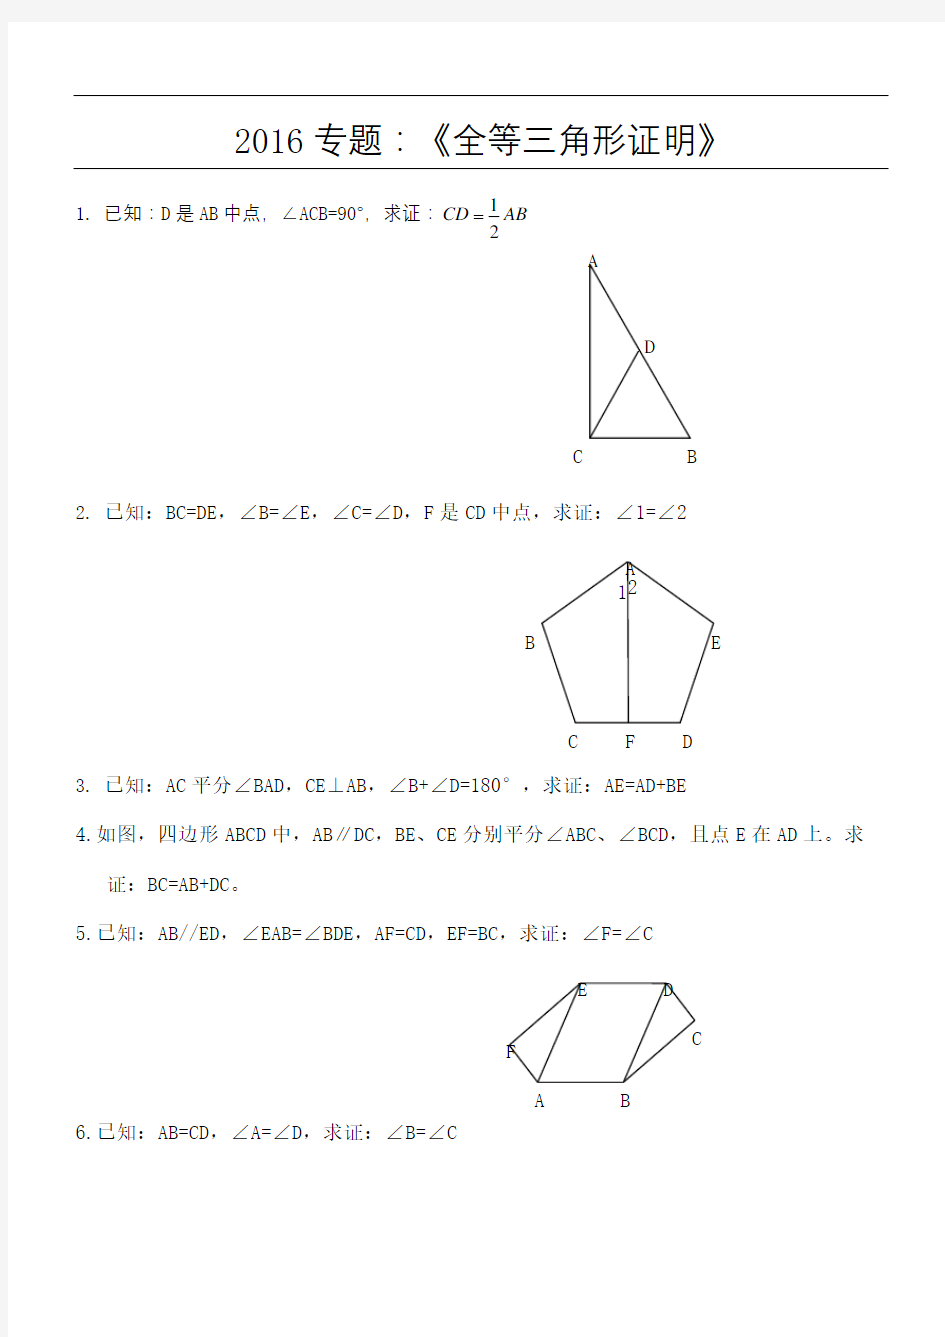 全等相似三角形证明经典题及相似三角形